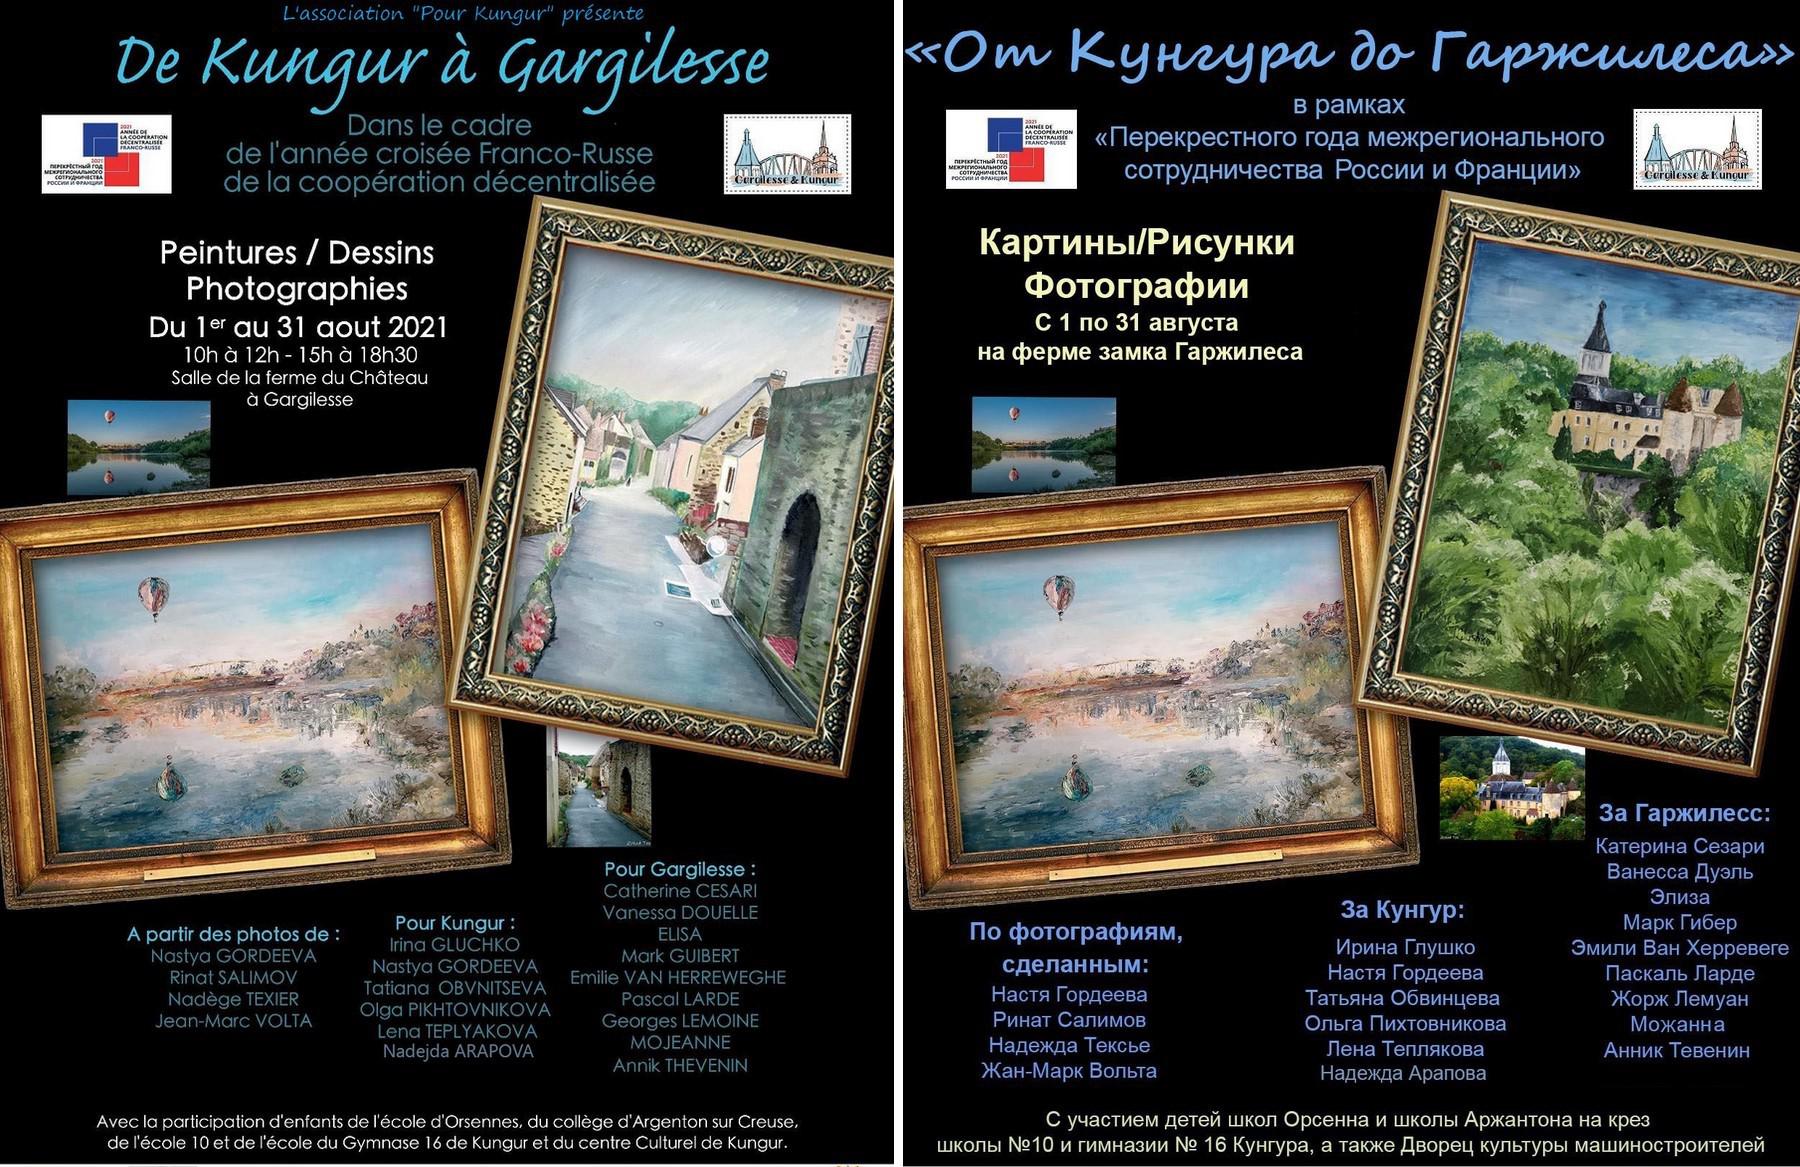 Ассоциация  «Все для Кунгура» организует выставку  тематических картин, рисунков и фотографий  «От Кунгура до Гаржилесса» в замке Гаржилесс во Франции с 1 по 31 августа 2021 года.
 